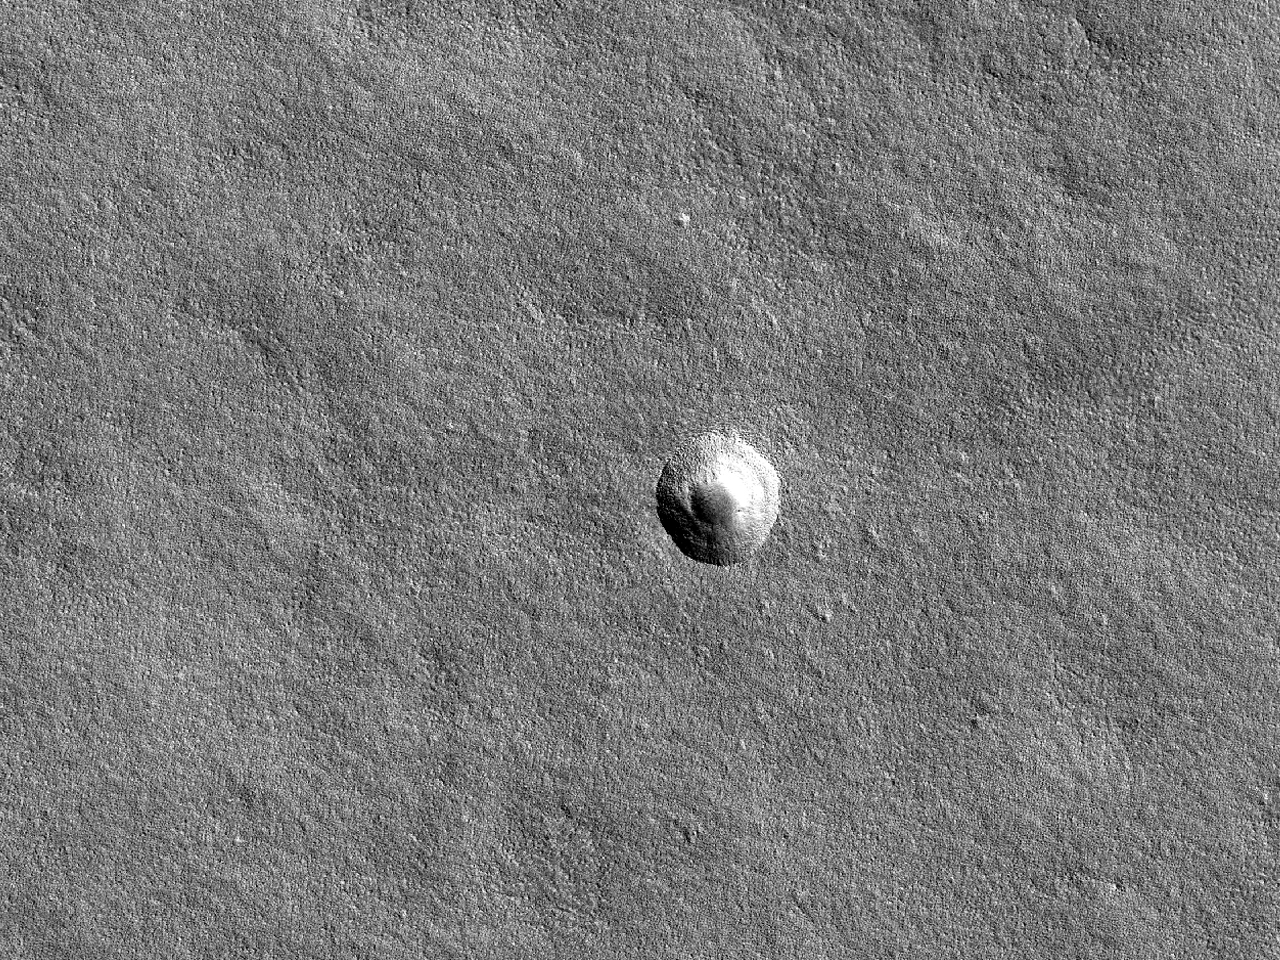 Pequena cratera